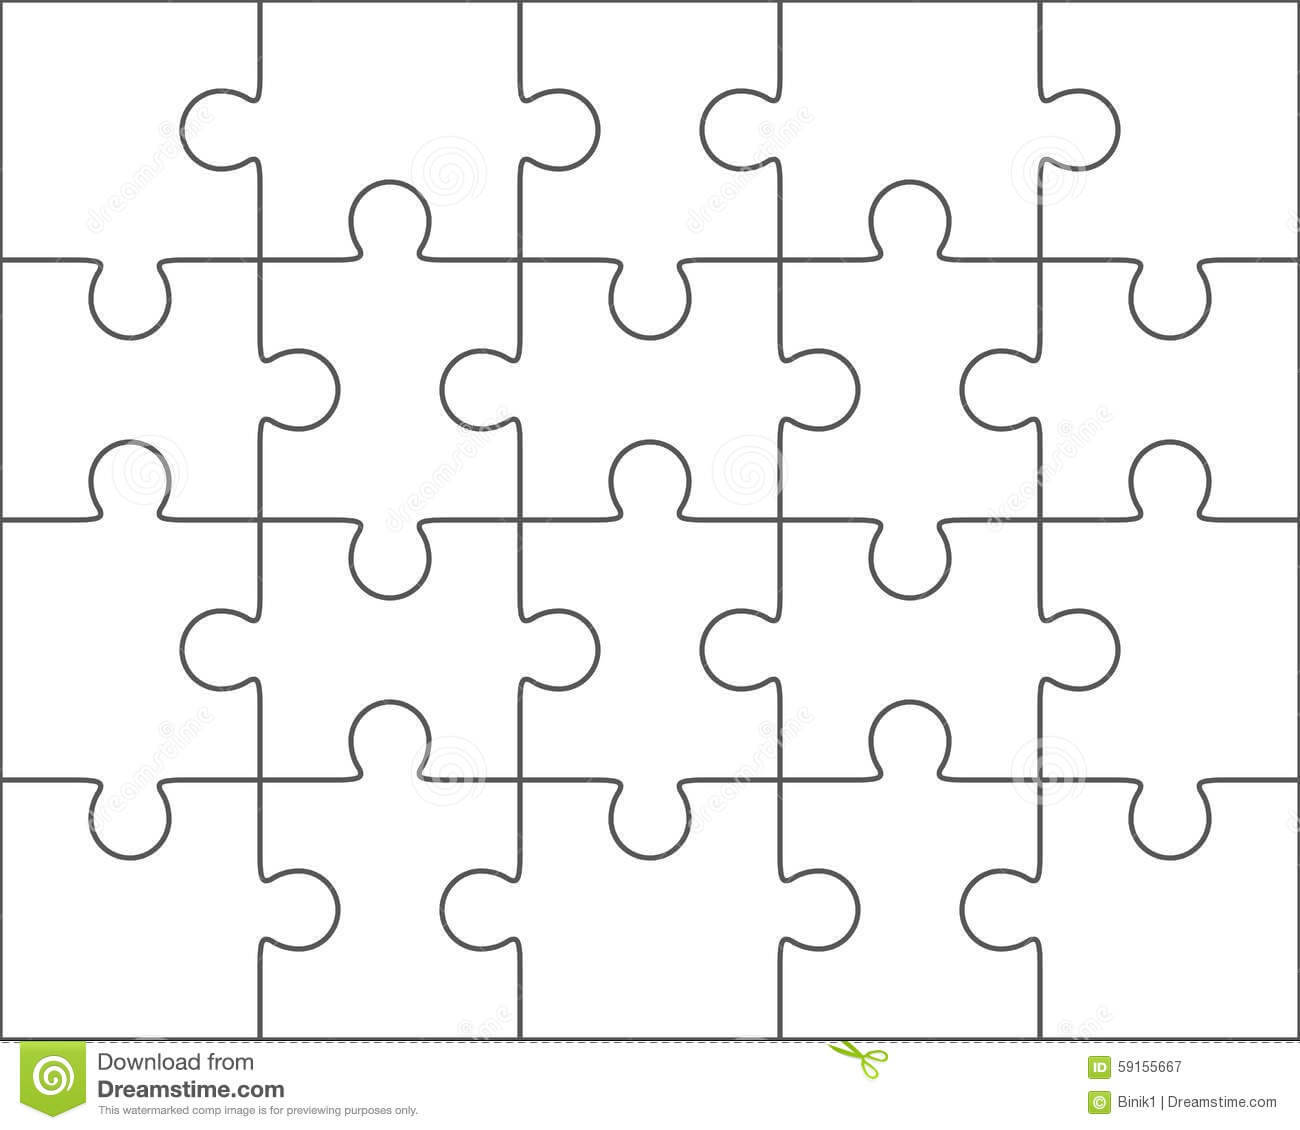 Jigsaw Puzzle Blank Template 4X5, Twenty Pieces Stock Pertaining To Blank Jigsaw Piece Template